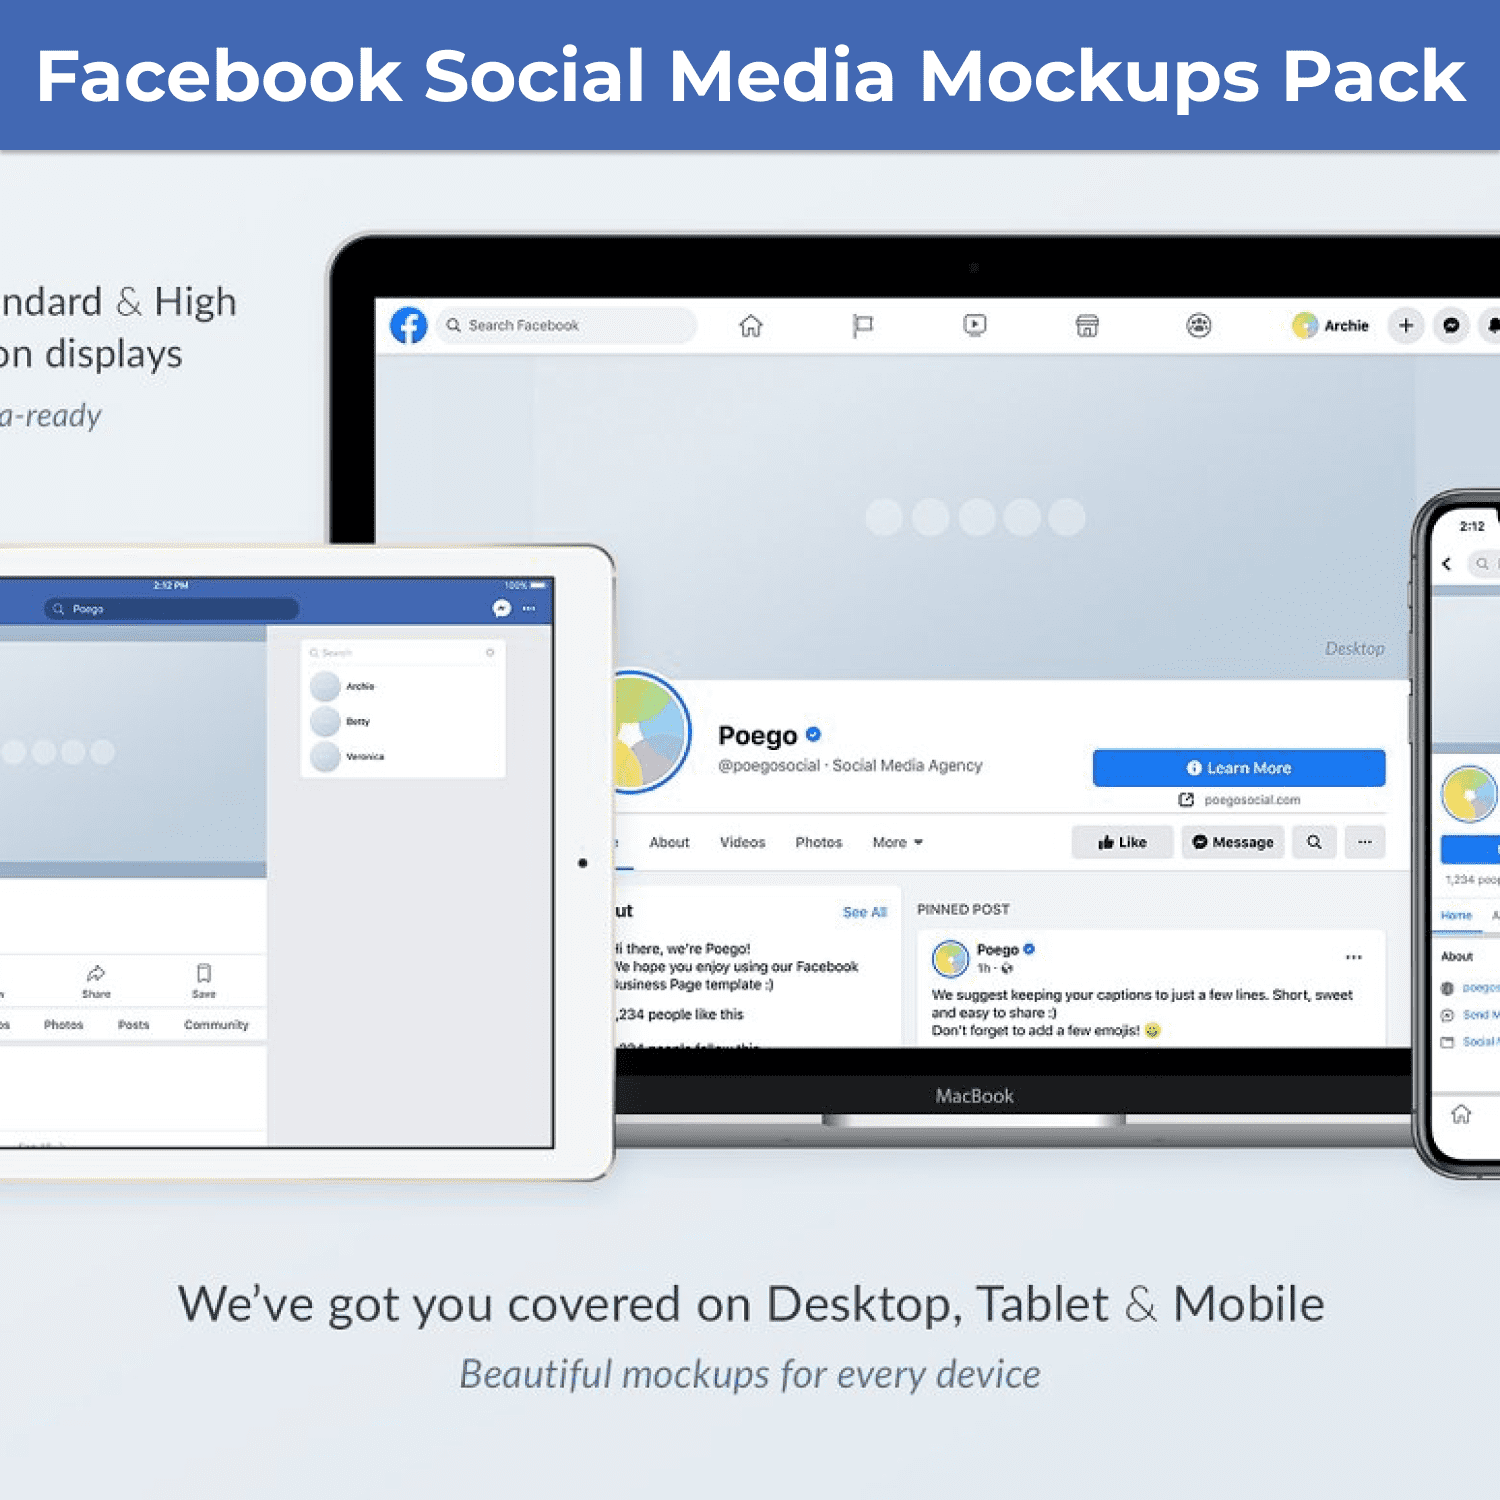 Facebook Social Media Mockups Pack cover image.